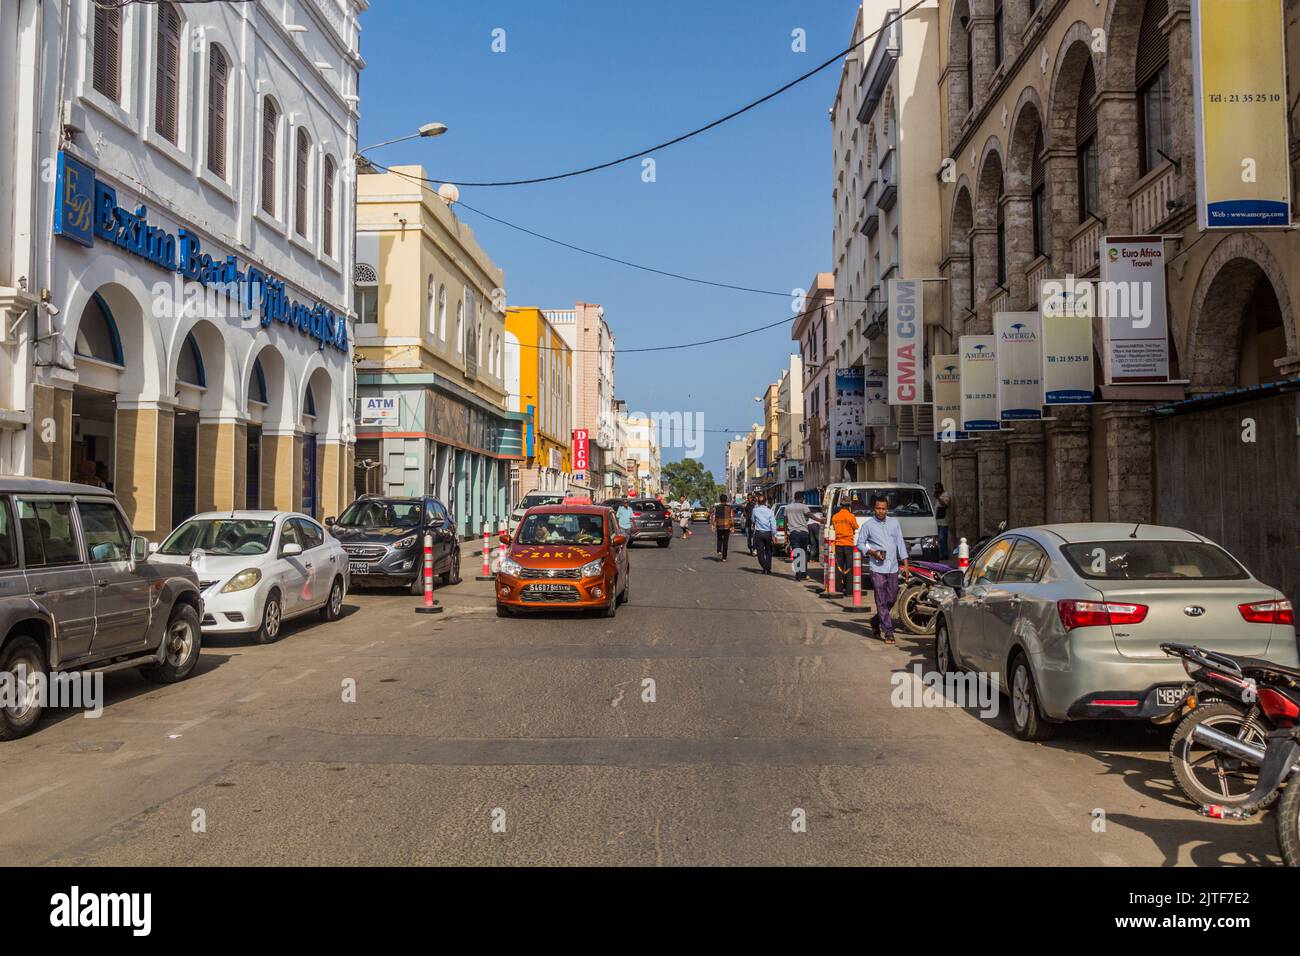 DJIBOUTI, DJIBOUTI - APRIL 17, 2019: Street in the European quarter in Djibouti, capital of Djibouti. Stock Photo